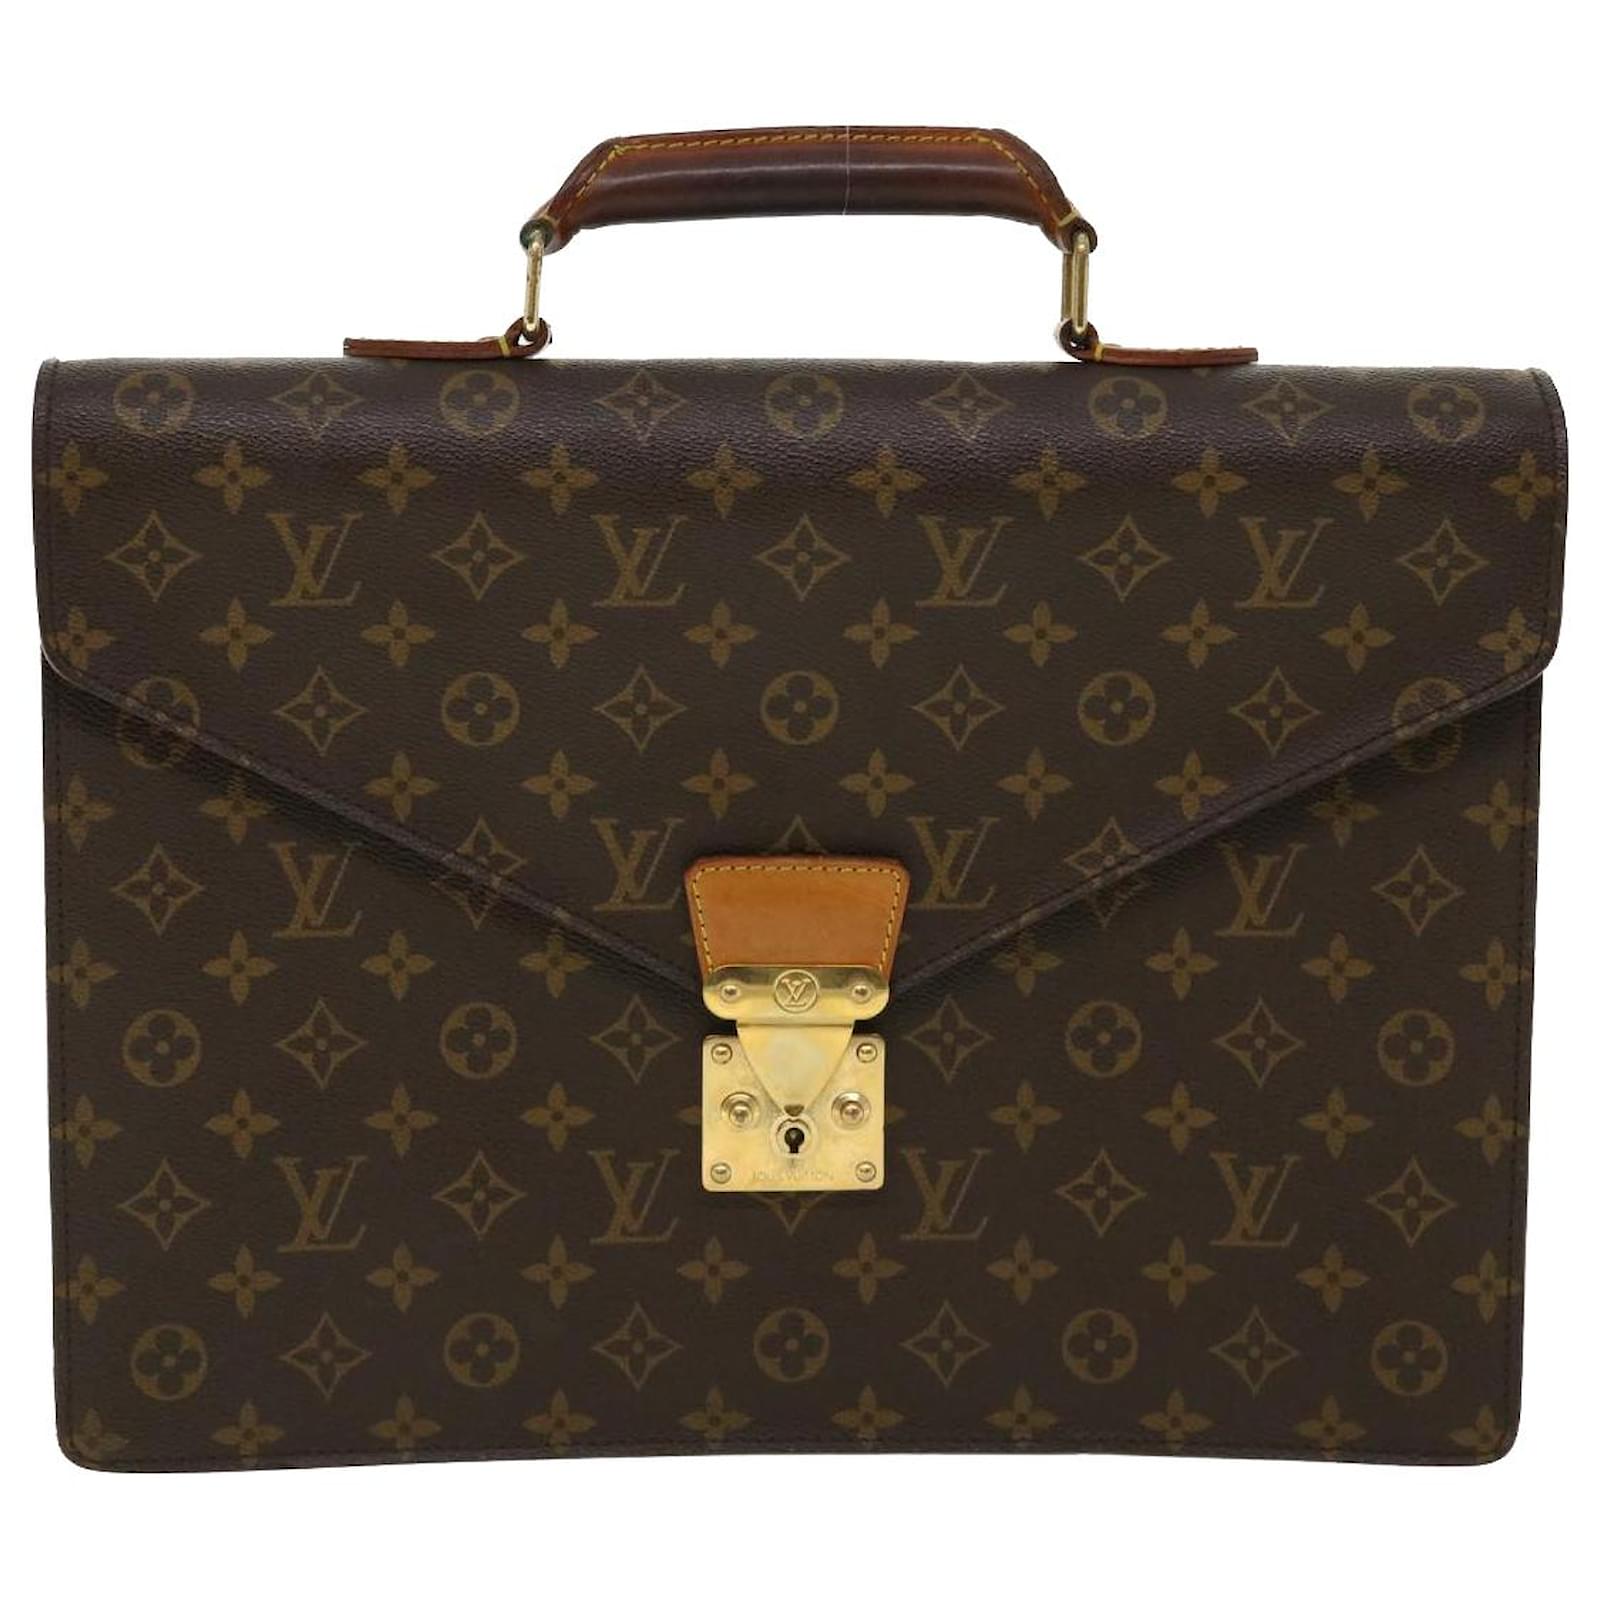 Authentic LOUIS VUITTON Monogram Serviette Conseiller M53331 Briefcase Bag